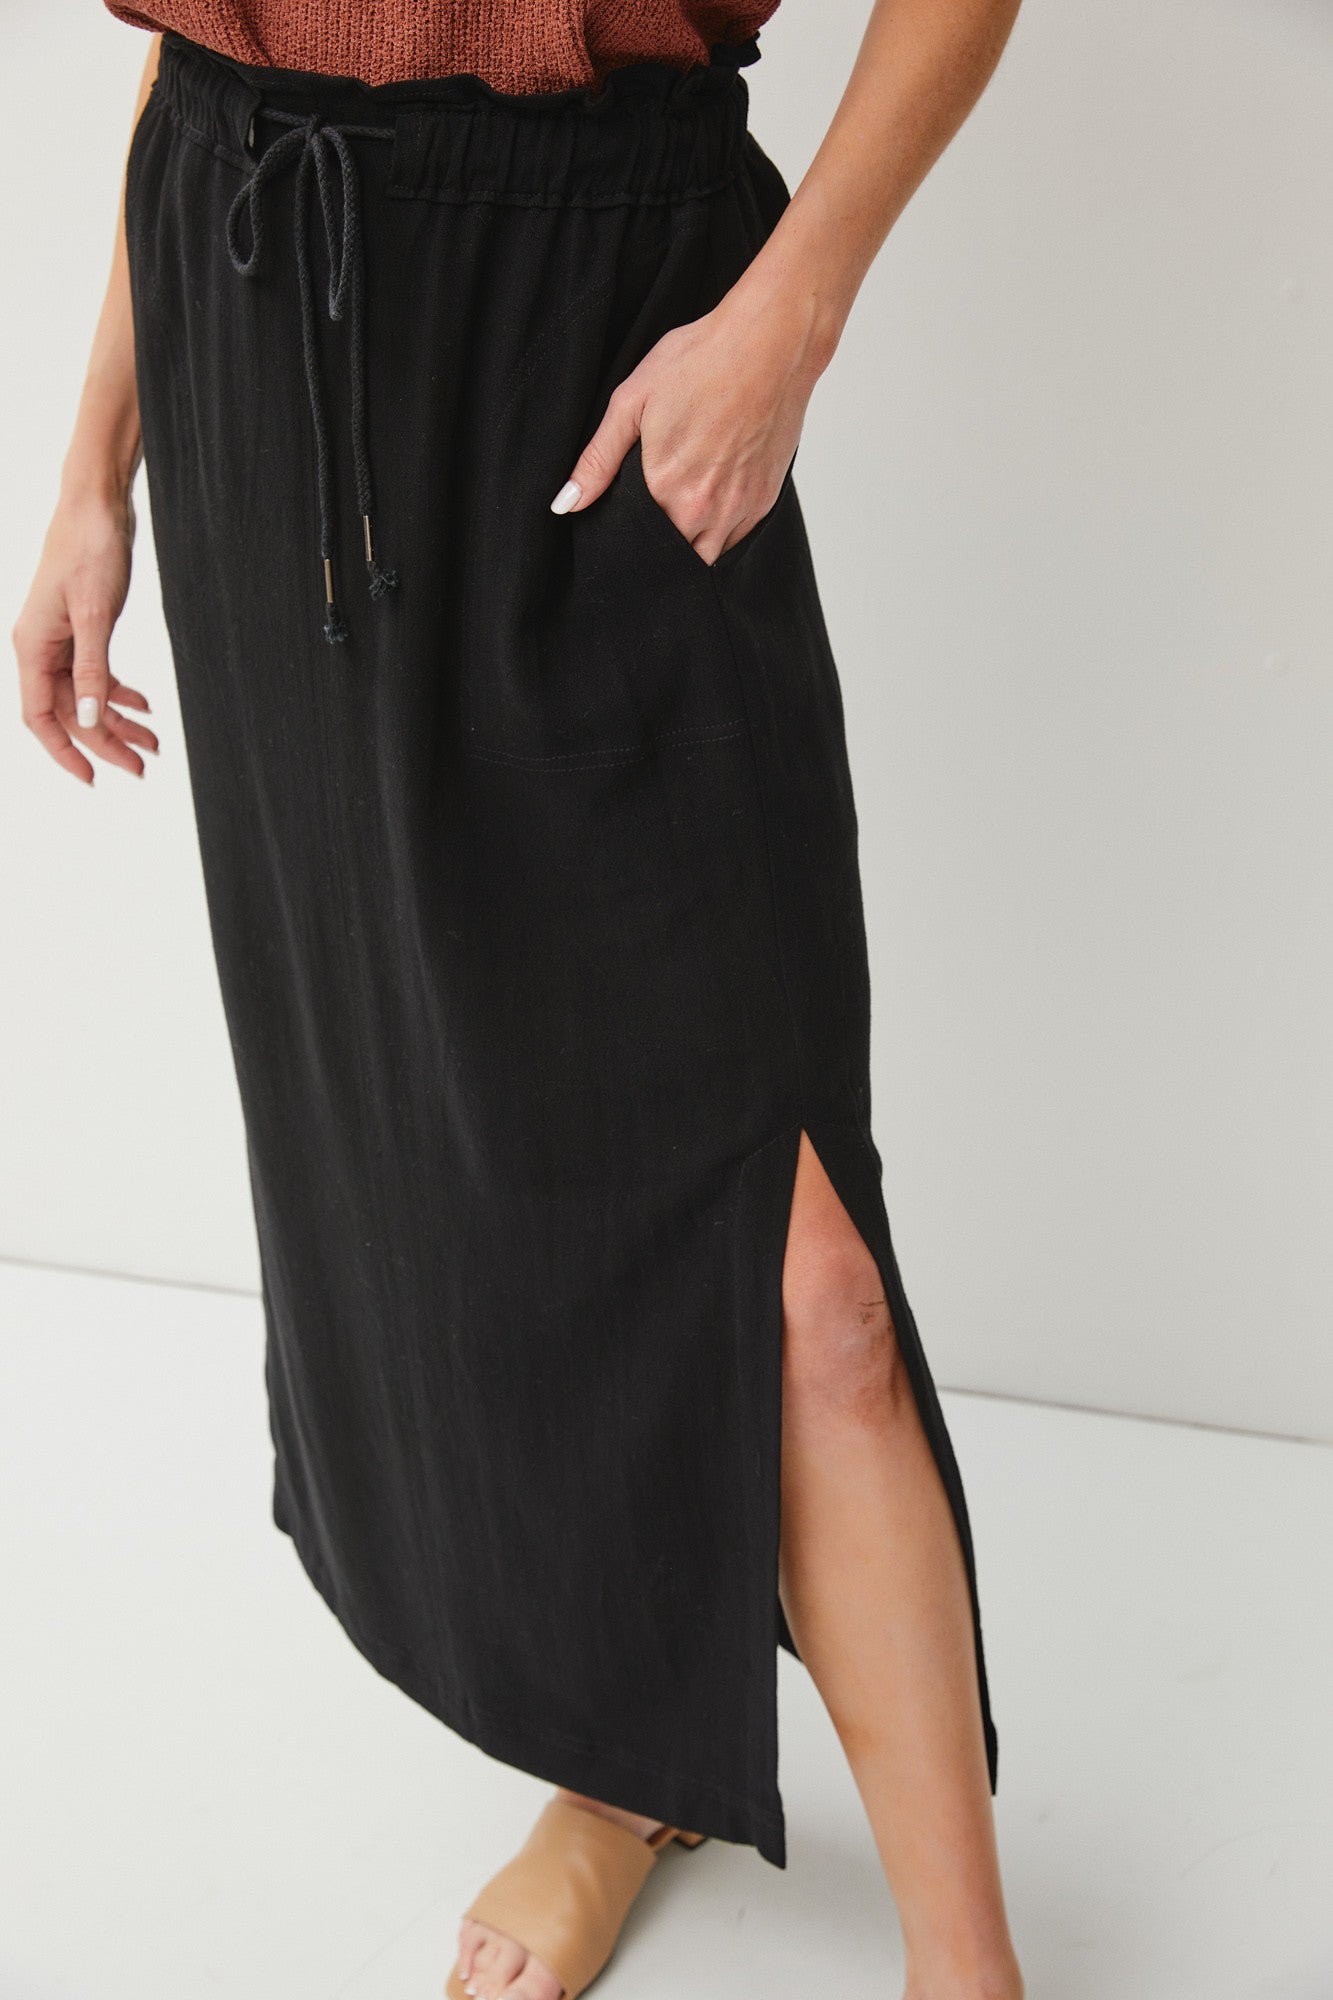 Drawstring Linen Skirt with Slits